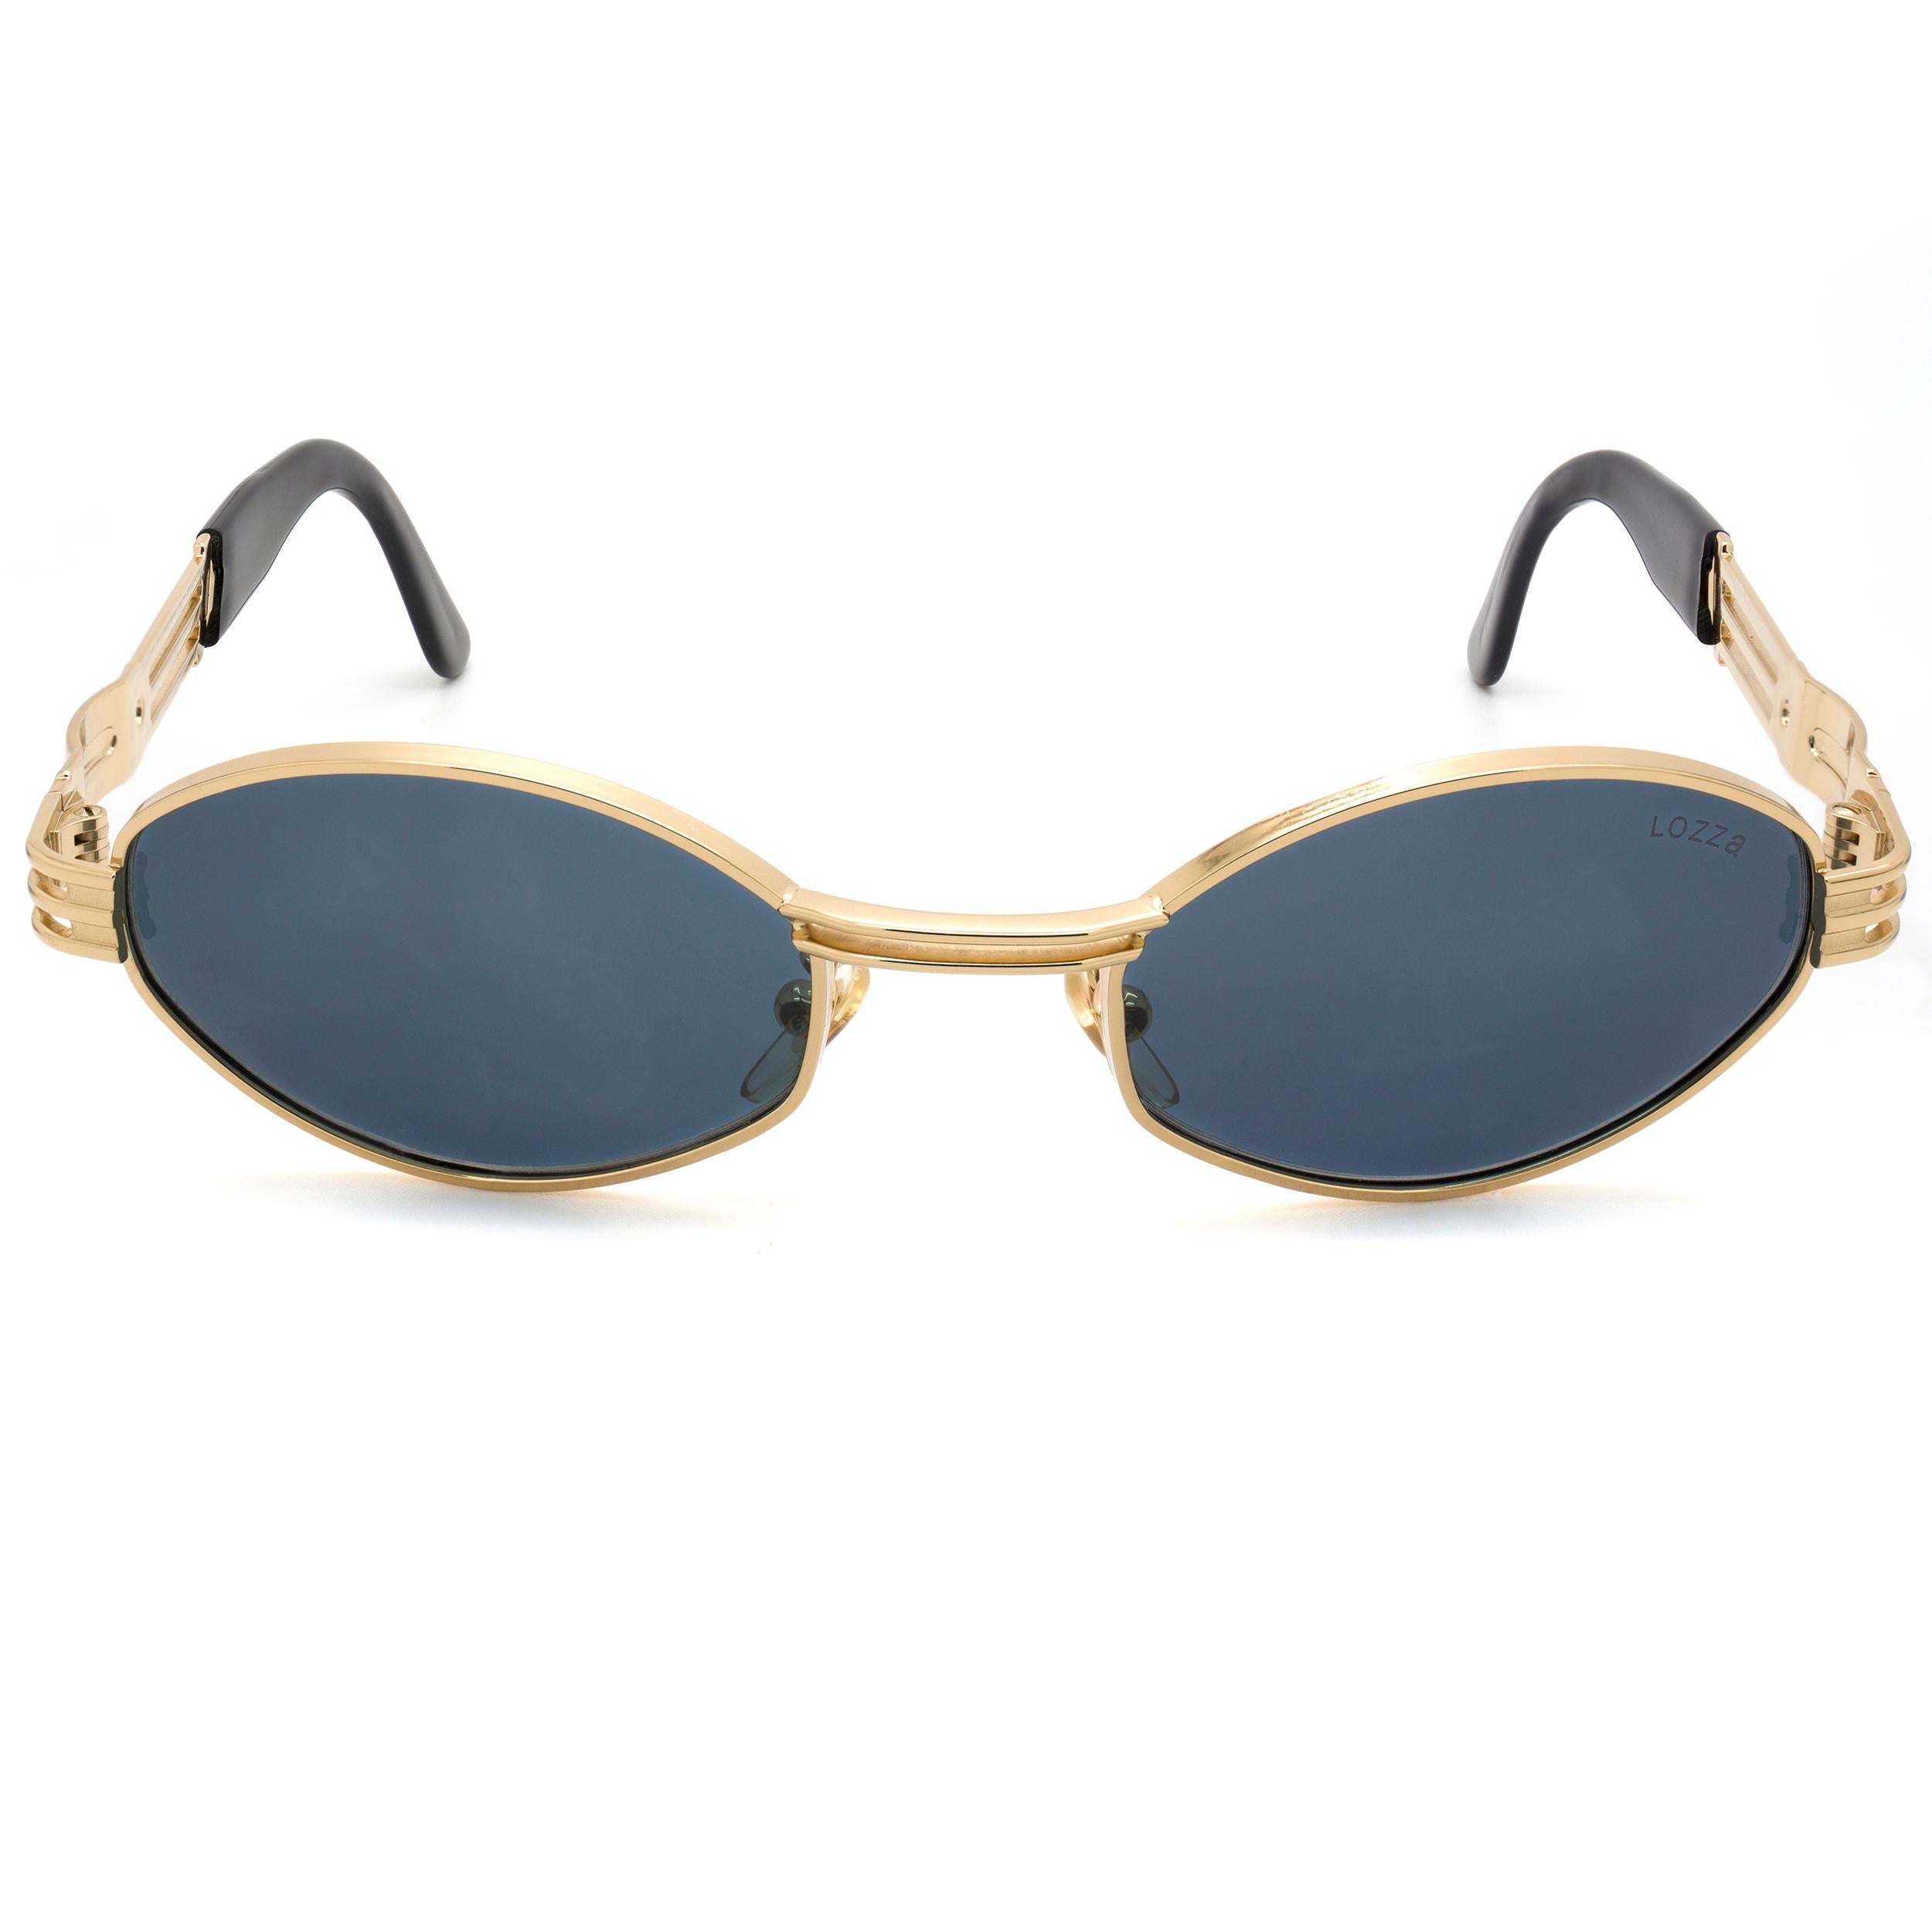 Lozza est la plus ancienne marque de lunettes d'Italie, fondée en 1878, toujours précurseur dans le choix des styles et des matériaux : dans les années 20, elle lance les premières lunettes de soleil en cellulose et dans les années 30 les montures